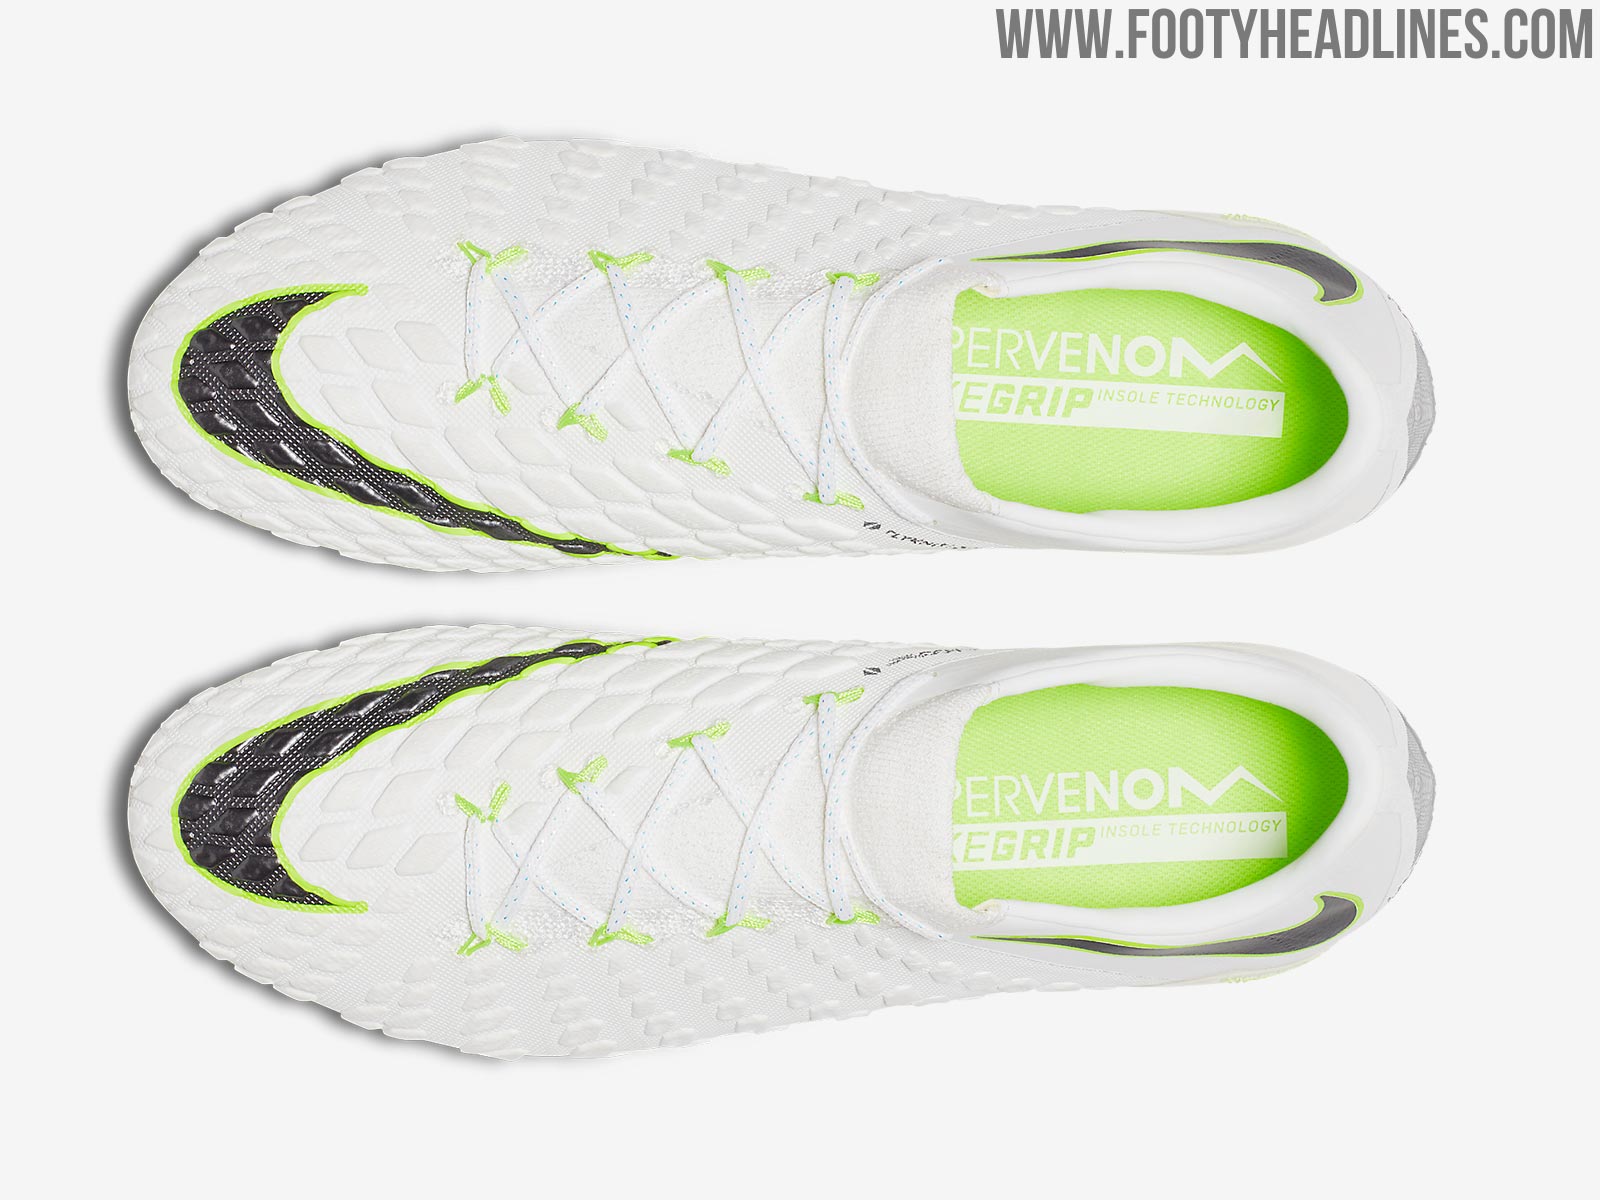 New Nike Hypervenom Phantom Transform SE Unboxing